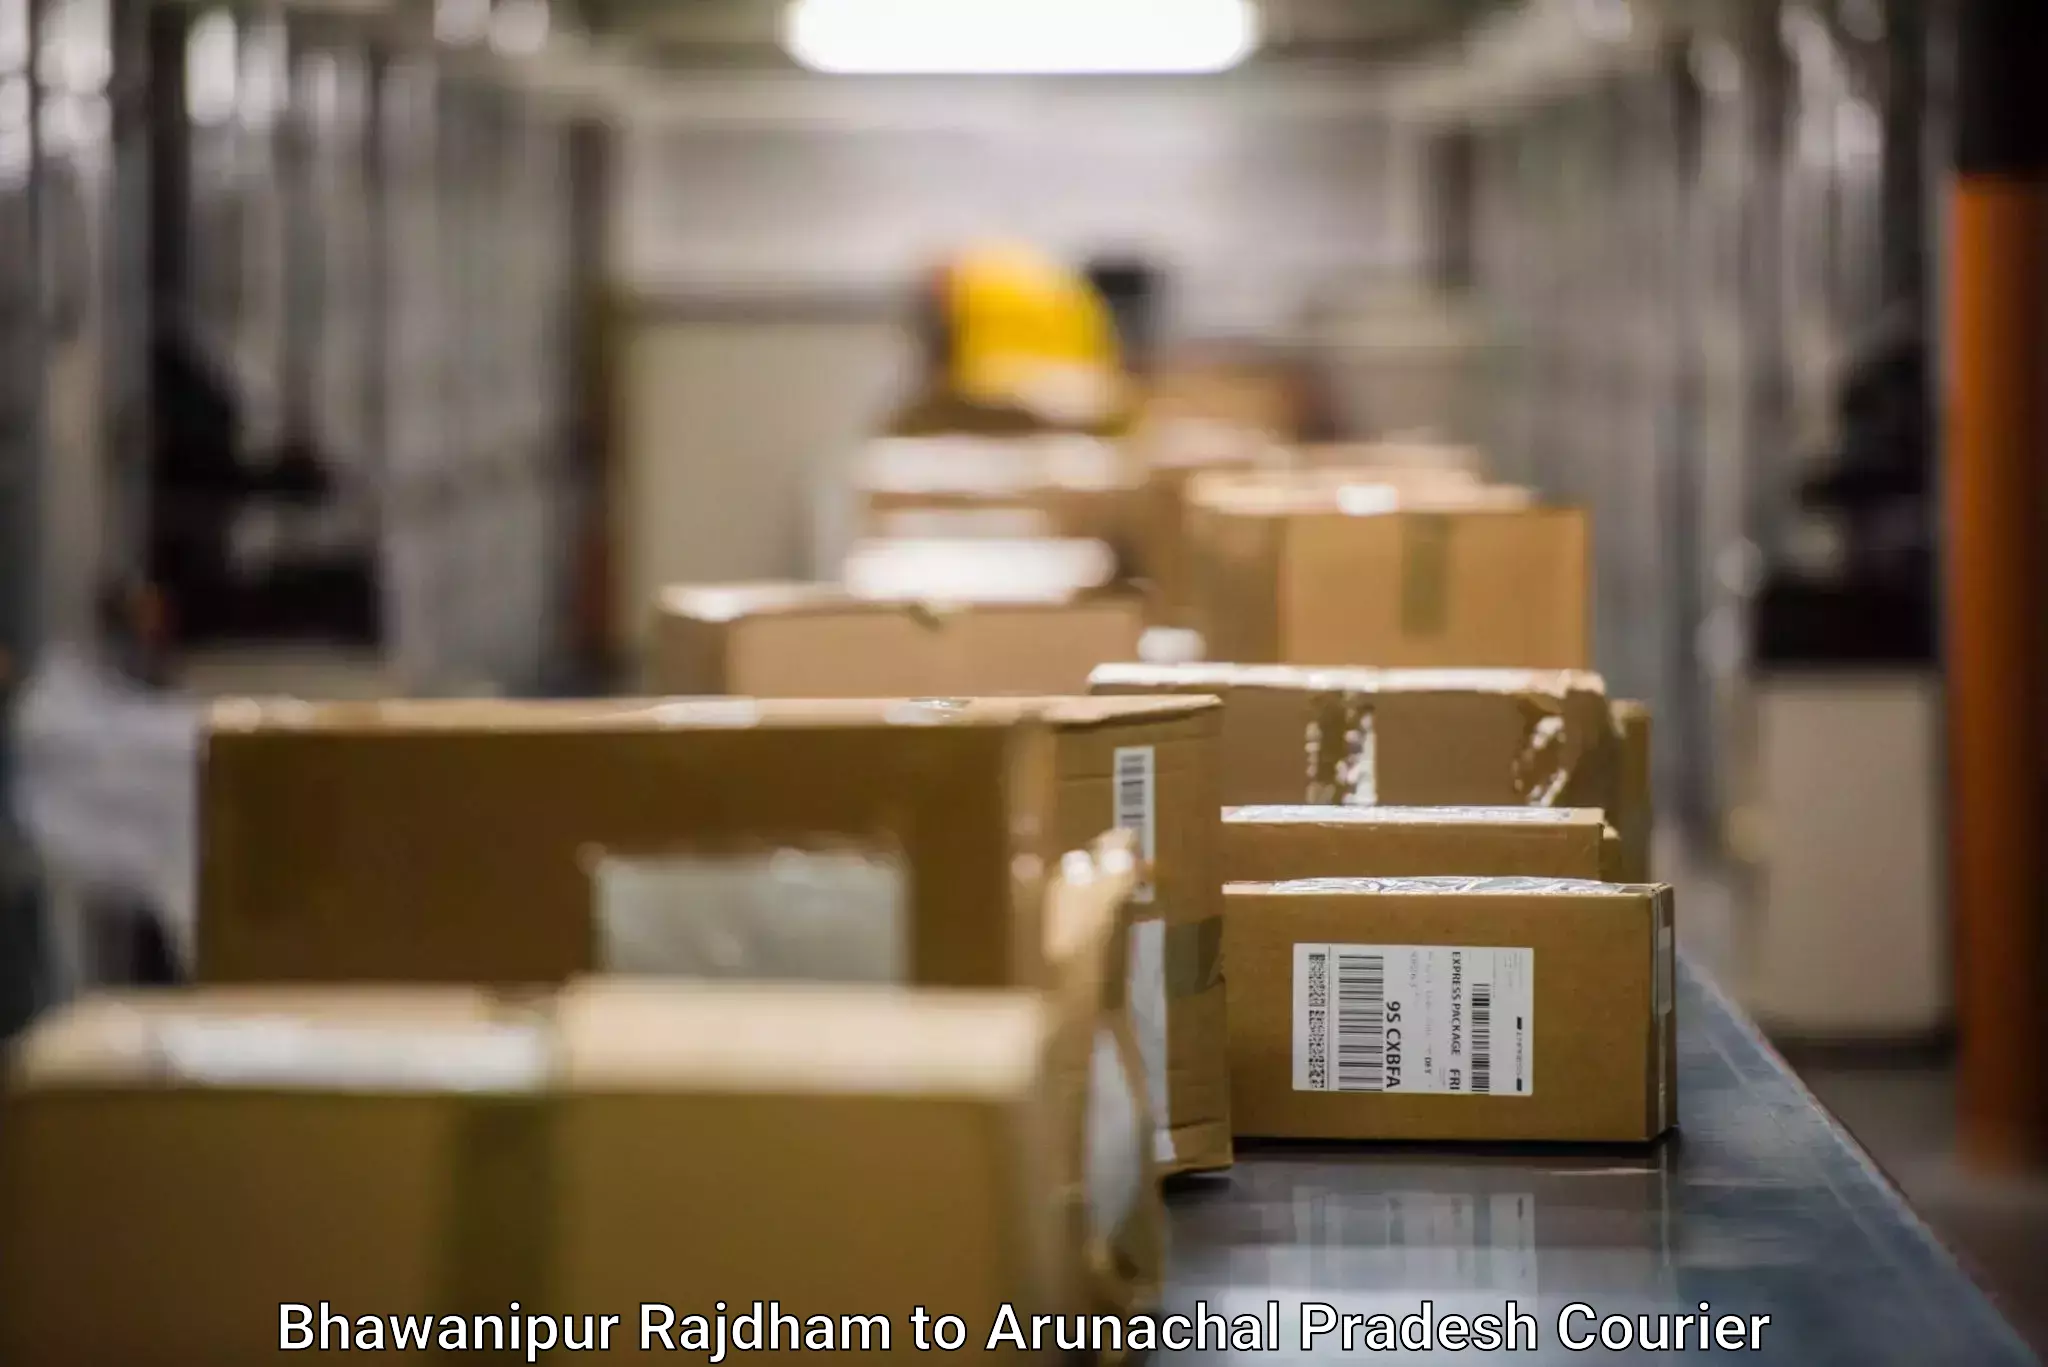 State-of-the-art courier technology Bhawanipur Rajdham to Upper Subansiri